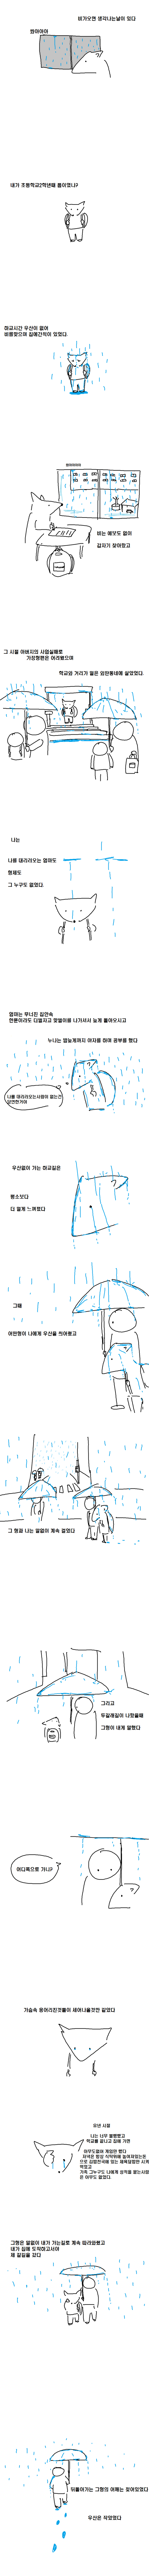 雨が降ったらその日を思い出す漫画jpg